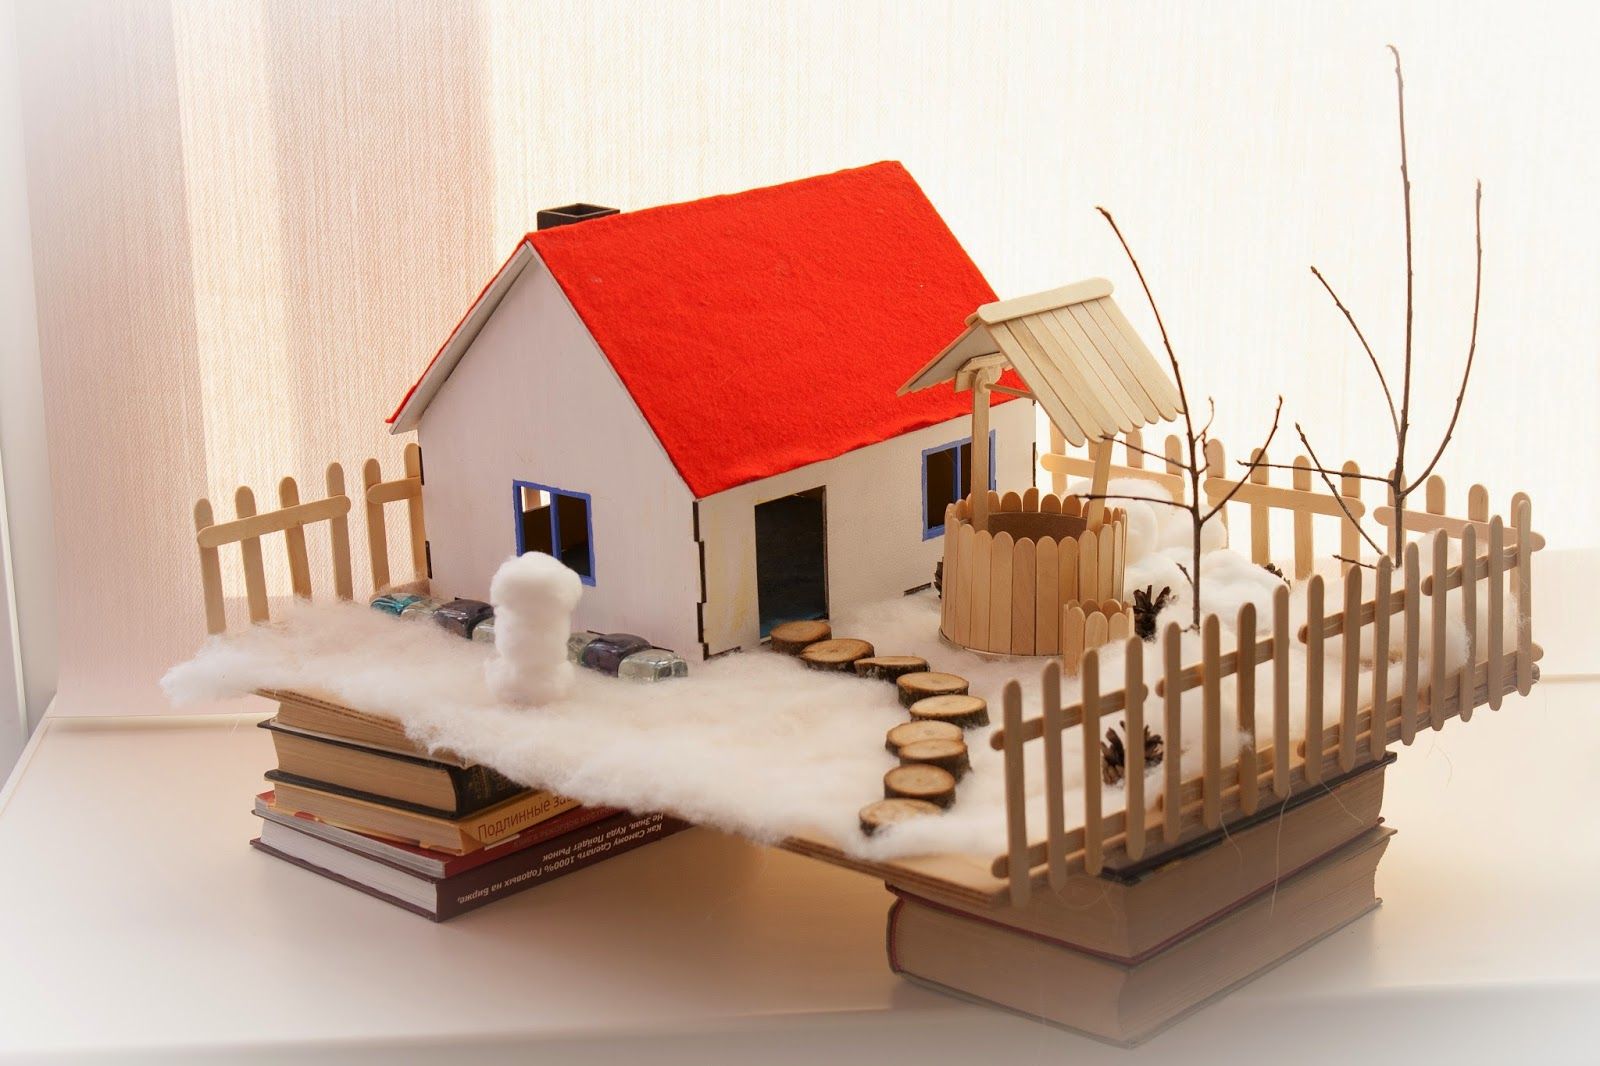 Поделка домик своими руками - пошаговая инструкция с фото и описанием